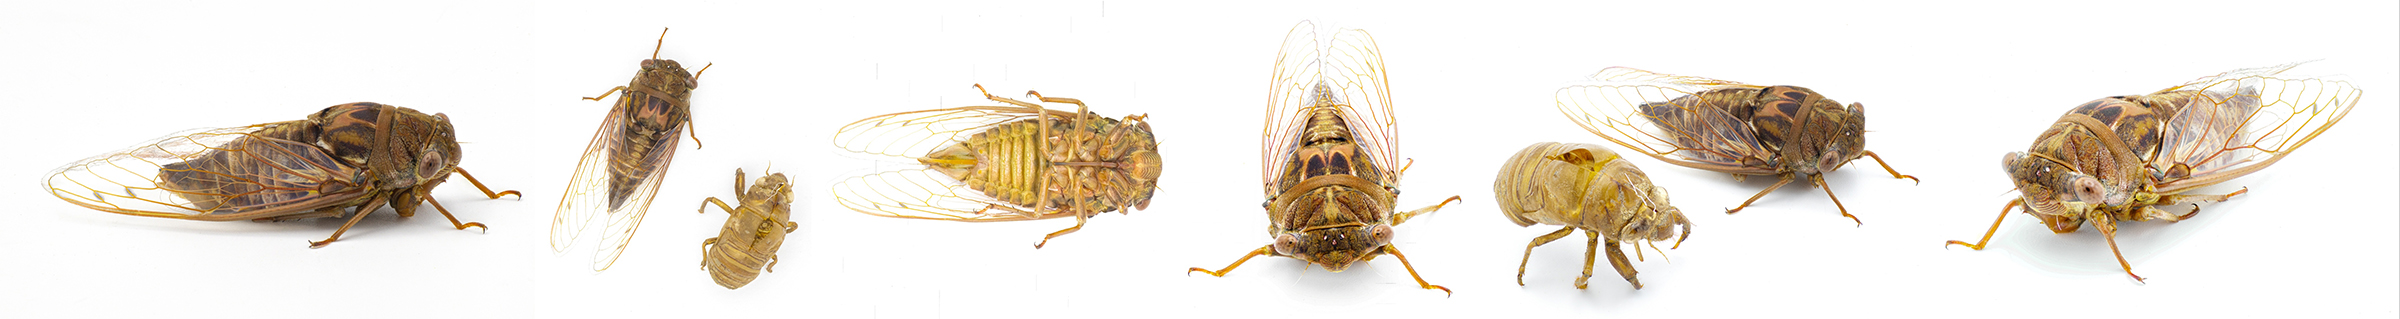 Cicadas for human consumprion